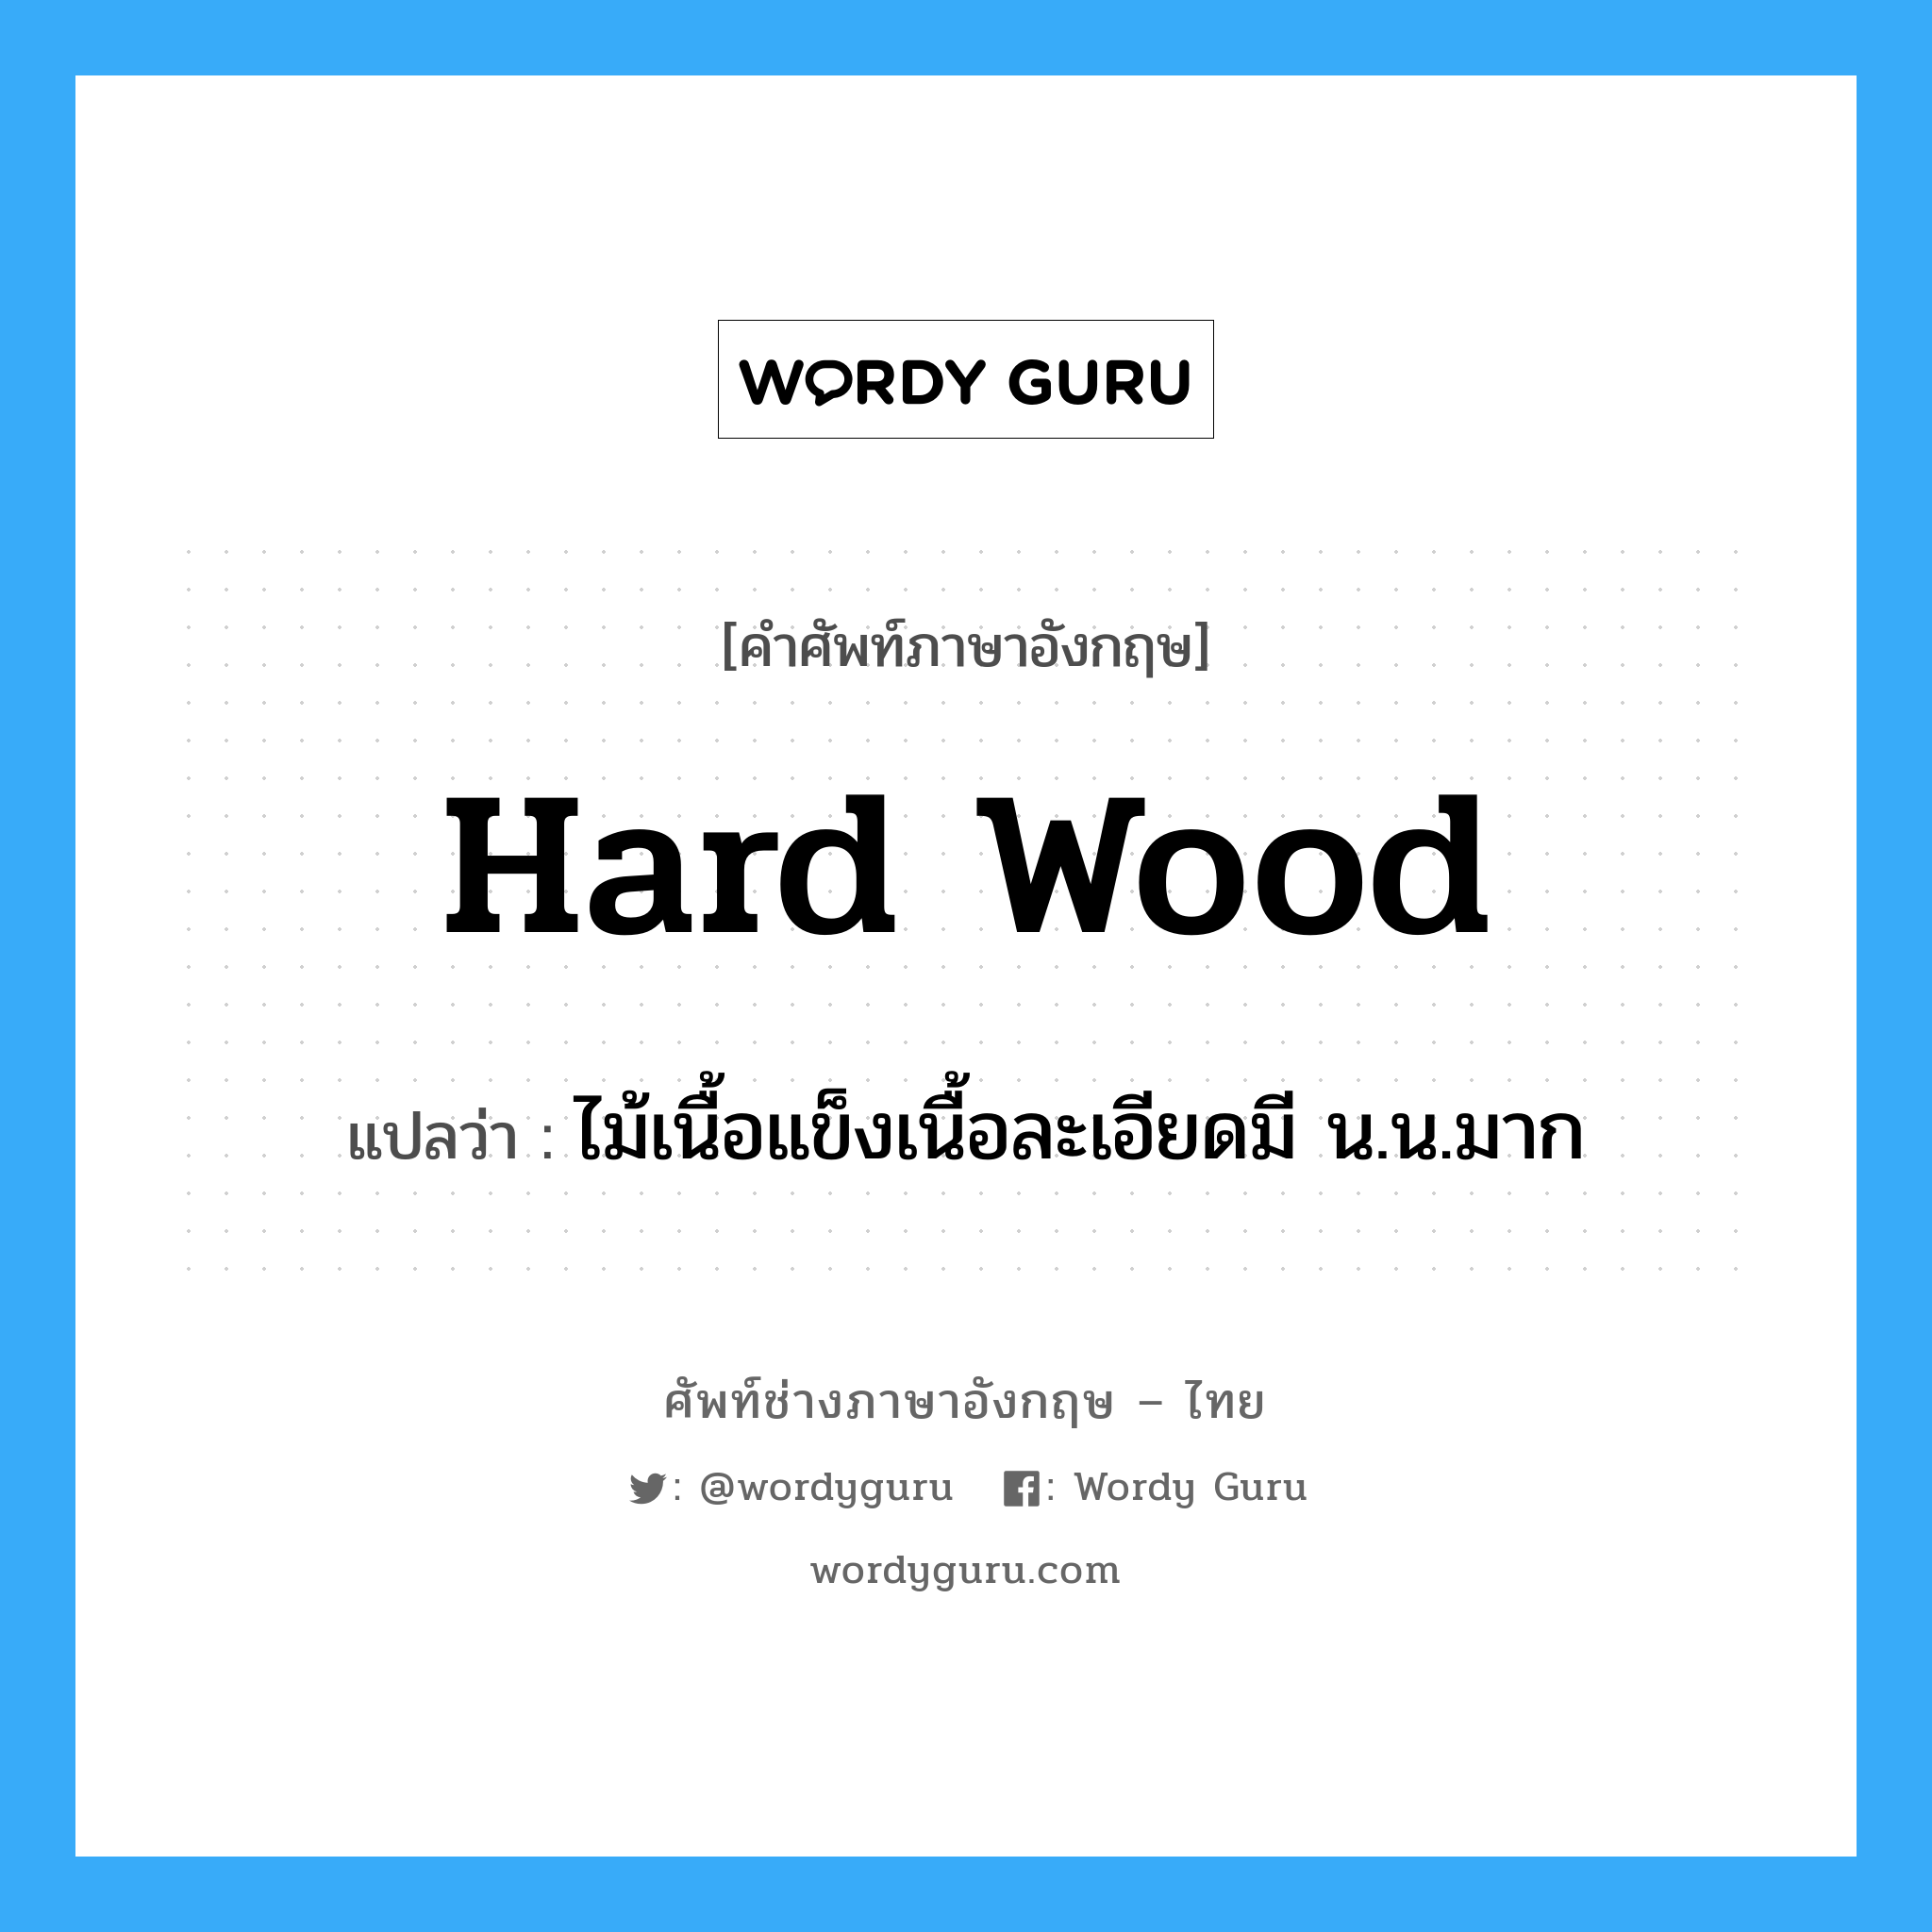 hard wood แปลว่า?, คำศัพท์ช่างภาษาอังกฤษ - ไทย hard wood คำศัพท์ภาษาอังกฤษ hard wood แปลว่า ไม้เนื้อแข็งเนื้อละเอียดมี น.น.มาก